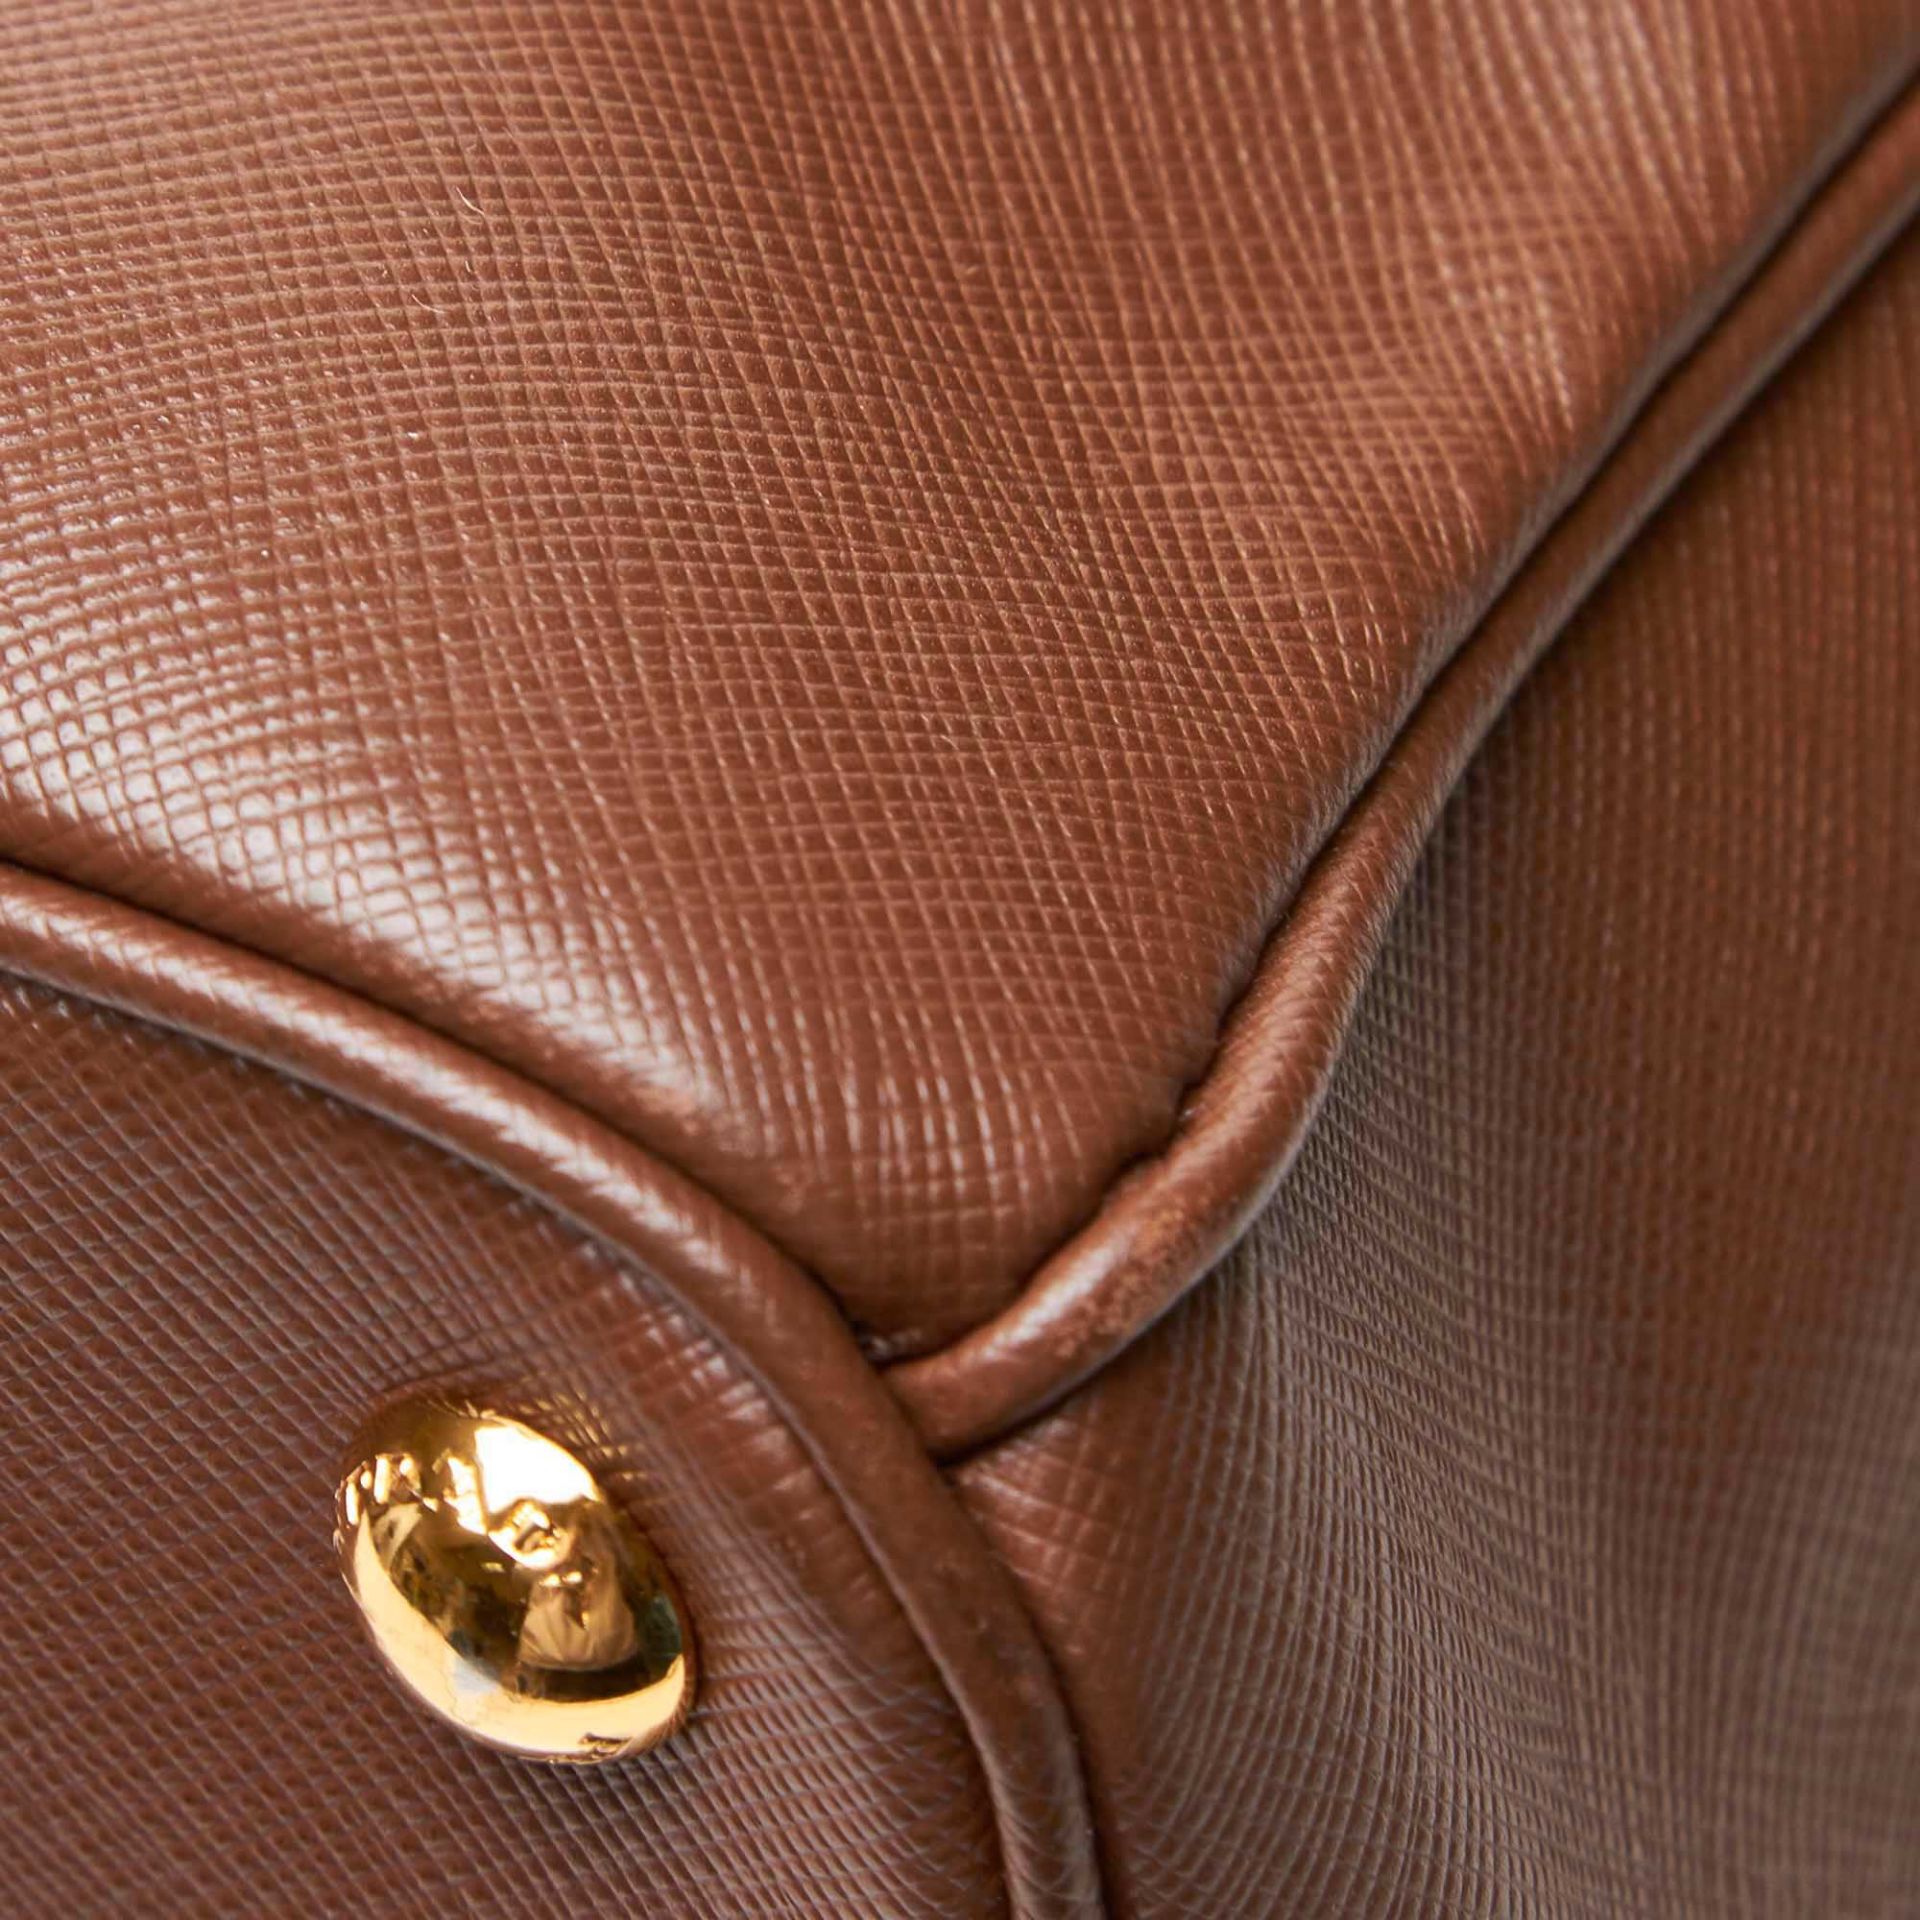 Prada Saffiano Leather Galleria Handbag - Image 2 of 10